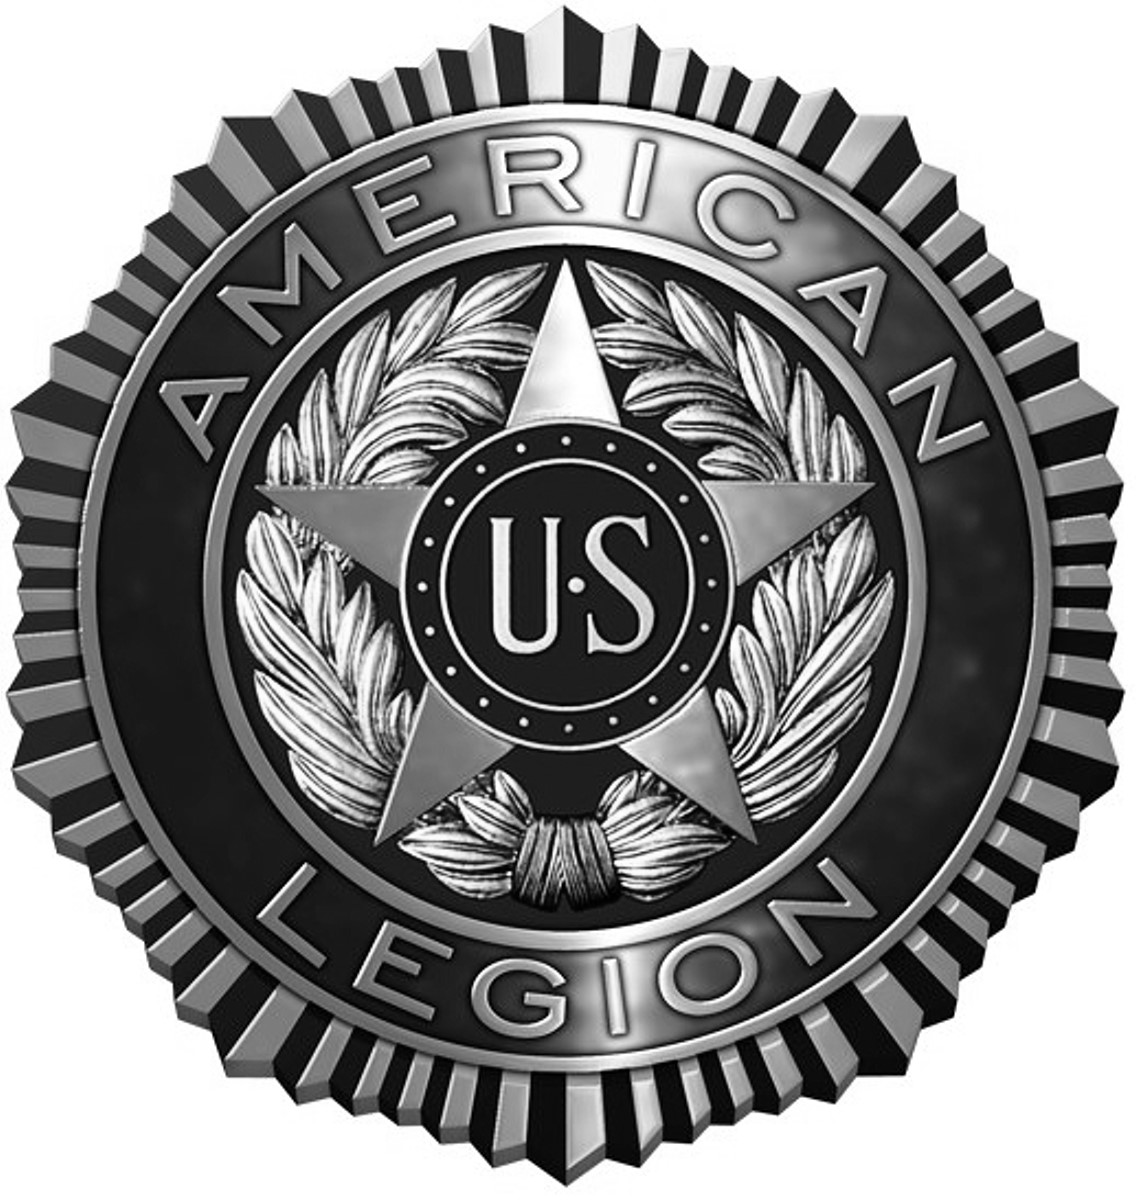 American legion. 